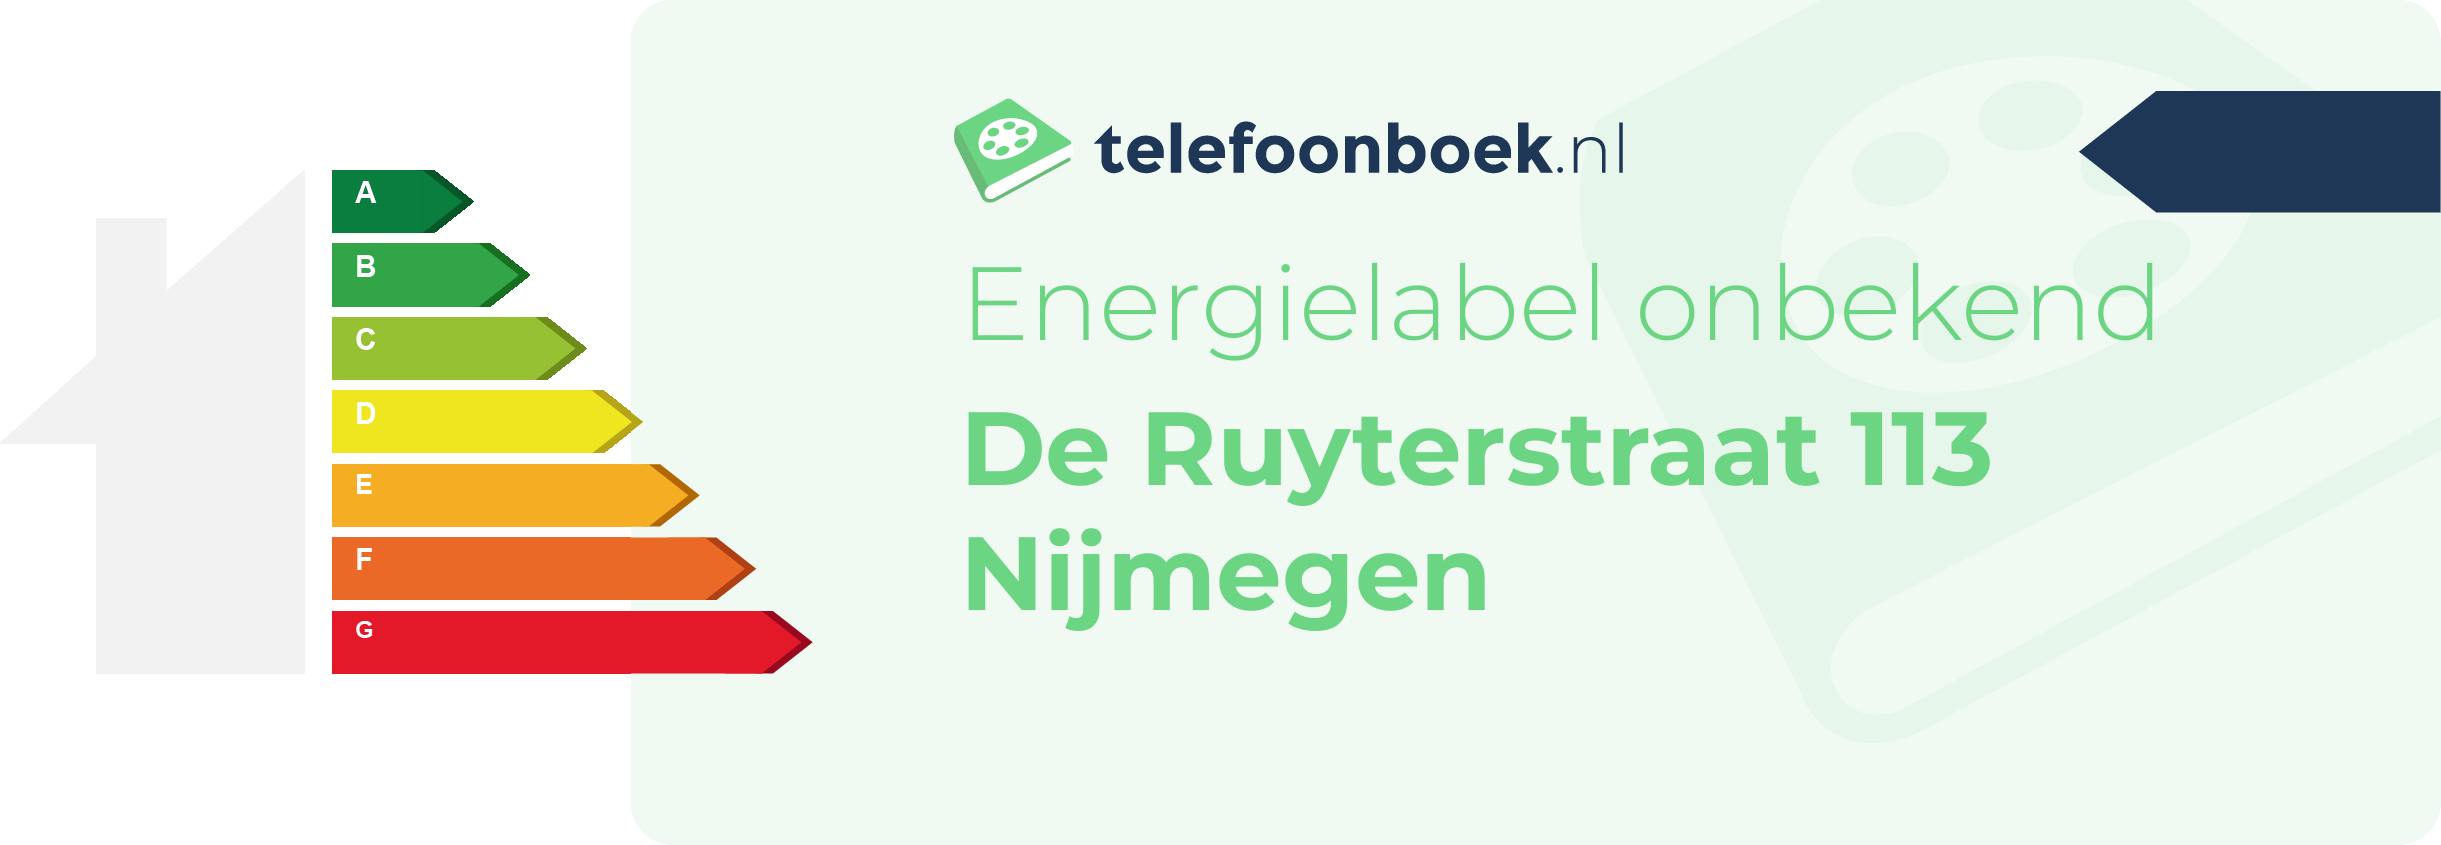 Energielabel De Ruyterstraat 113 Nijmegen